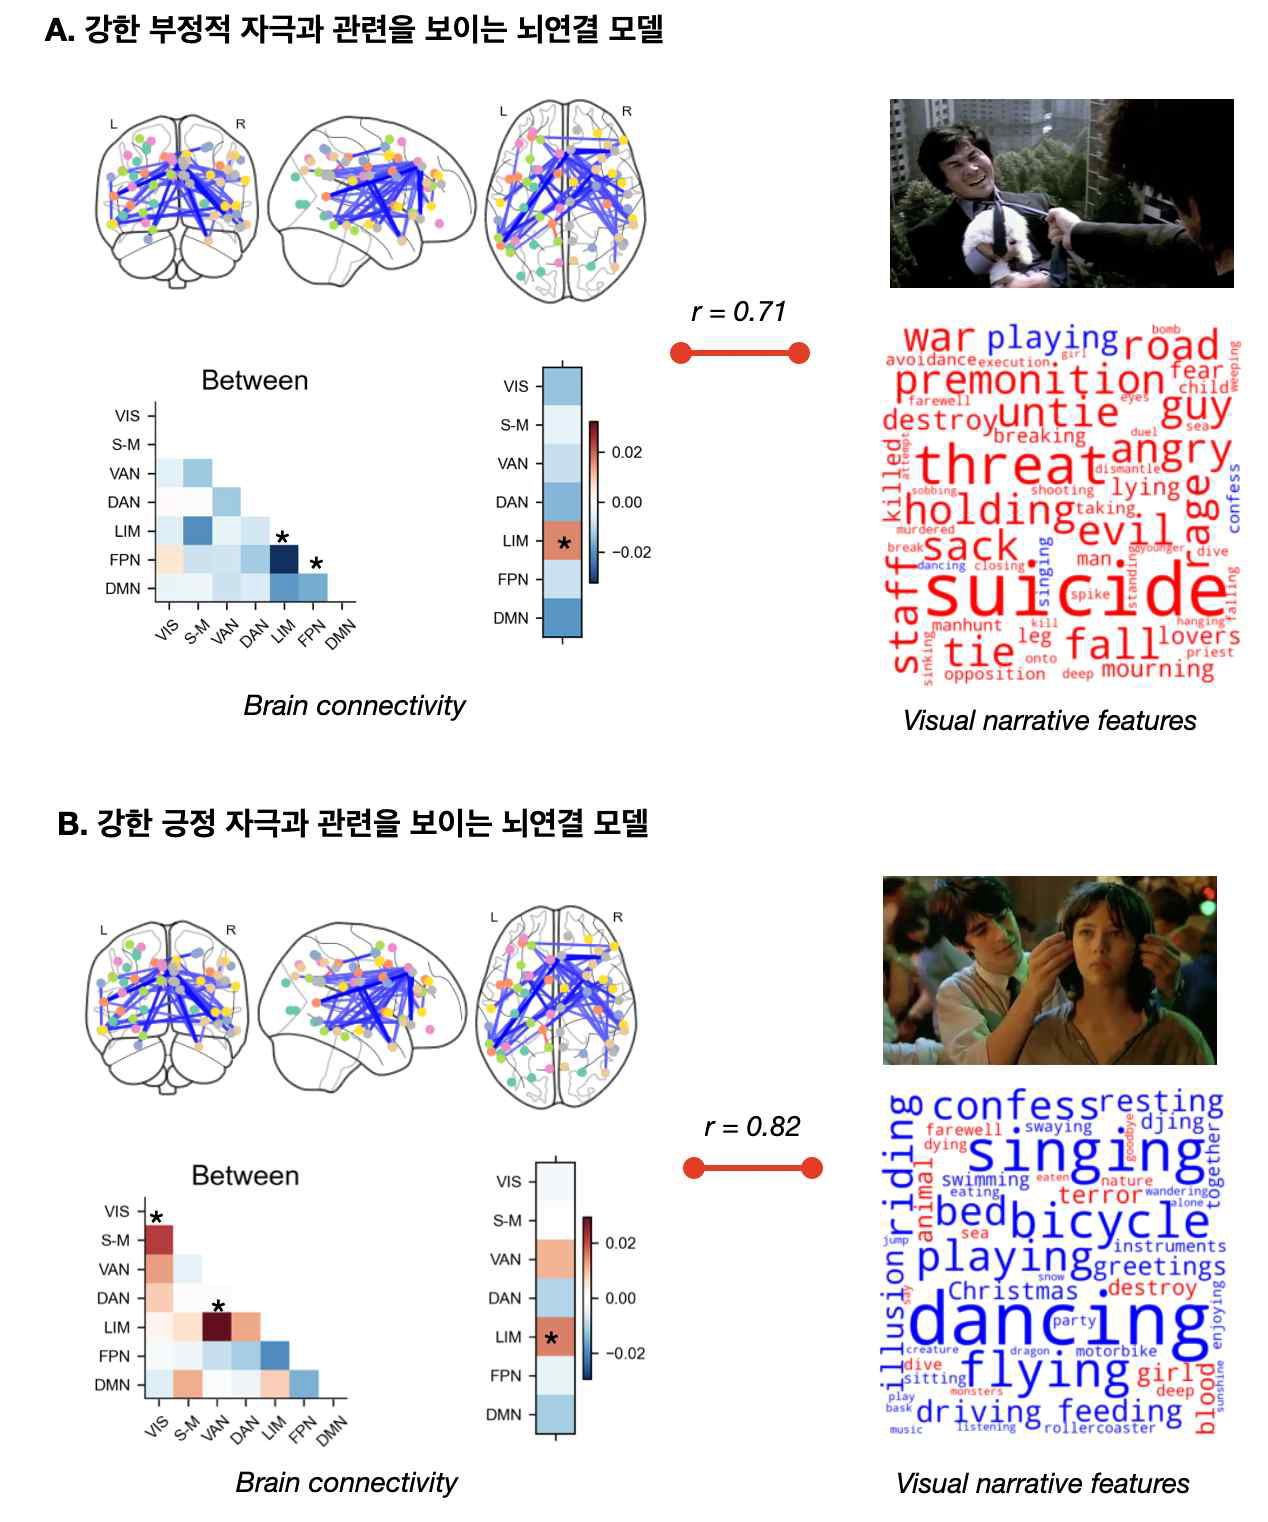 영화자극의 특성과 관련된 뇌연결 모델. A. 강한 부정적 특징의 자극과 관련을 보이는 뇌연결 모델. B. 강한 긍정 특징의 자극과 관련을 보이는 뇌연결 모델